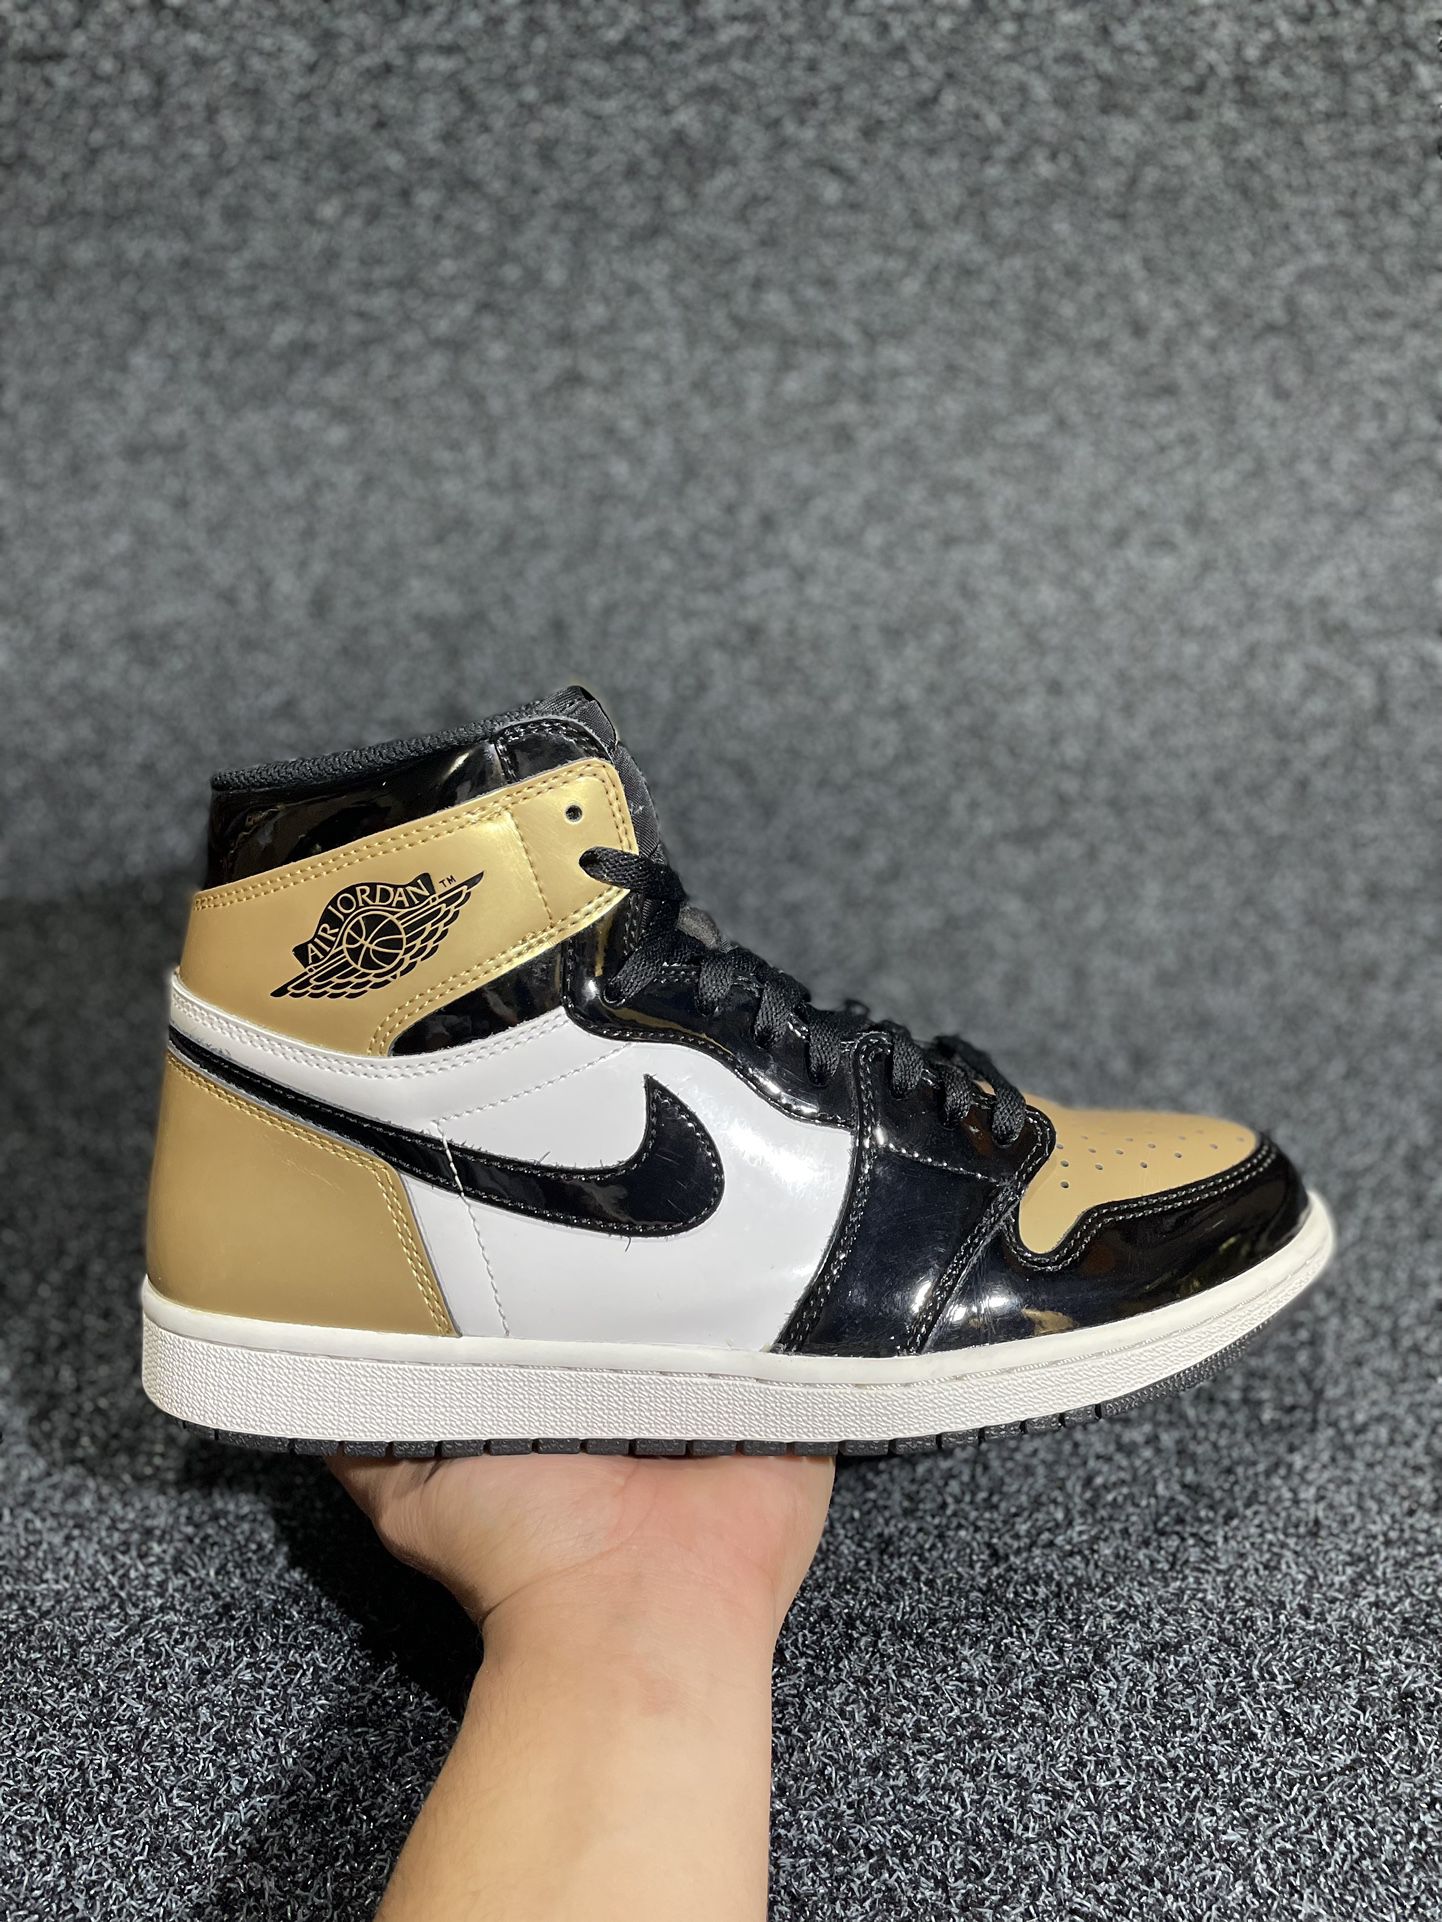 Jordan 1 High Gold Toe 